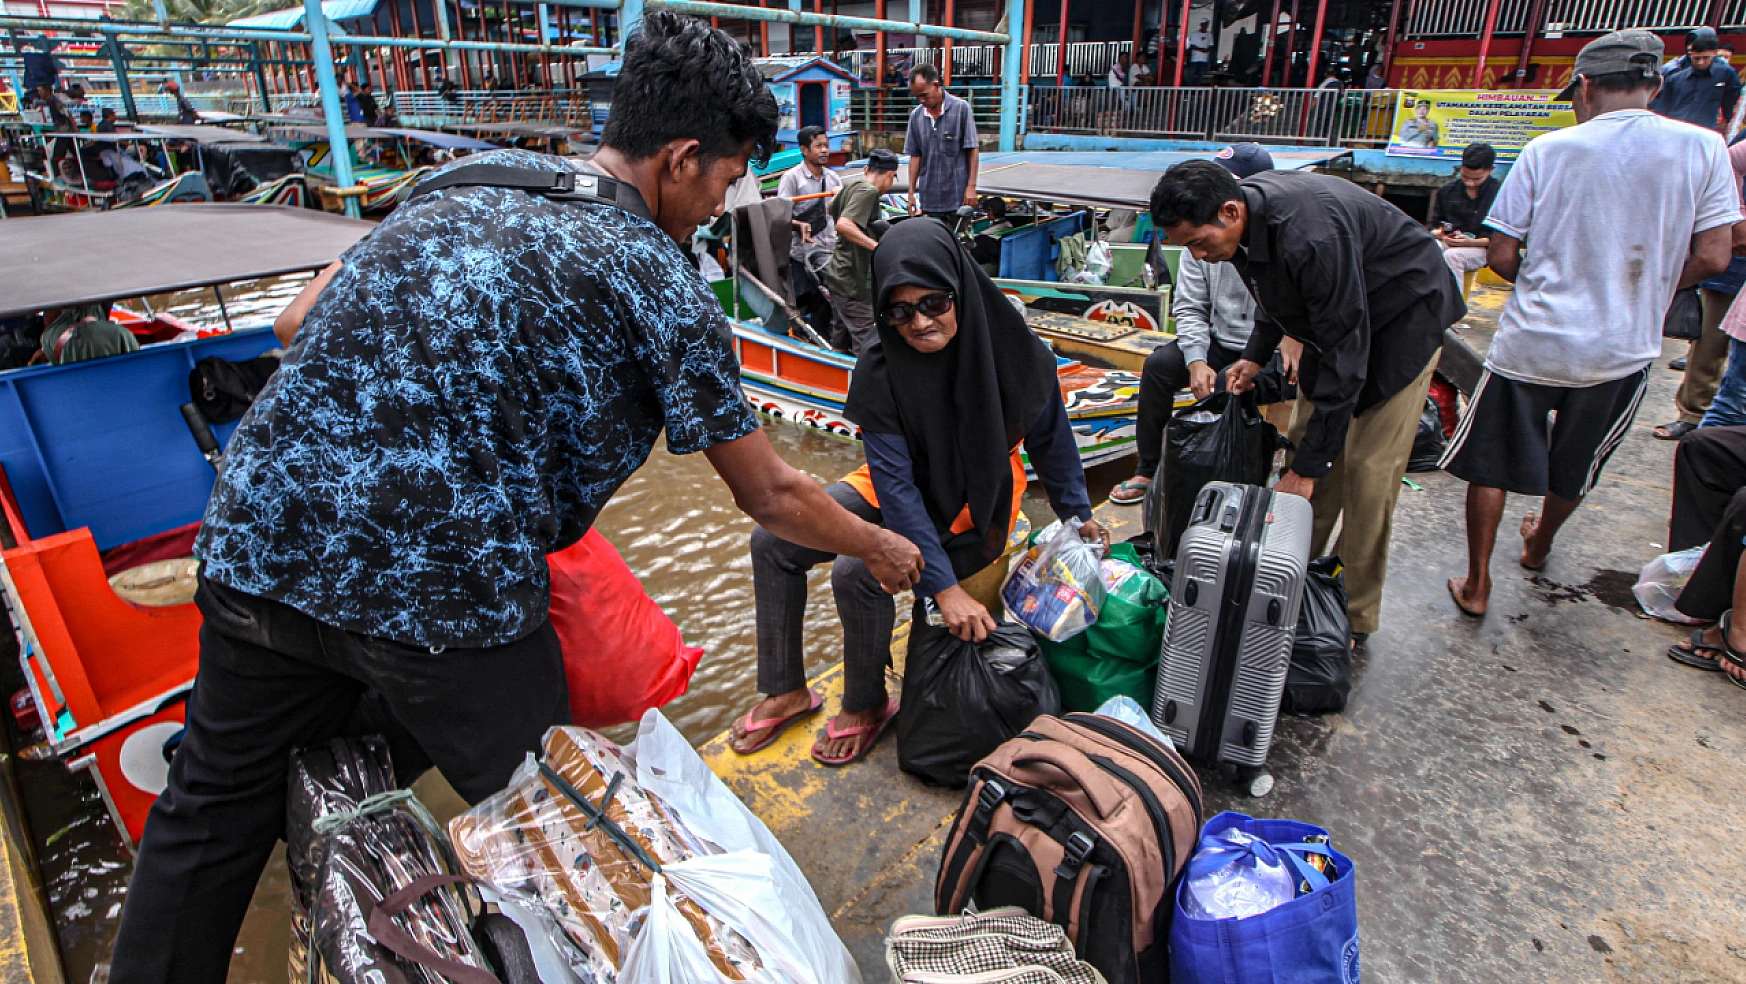 Endonezyalı yolcular, memleketlerine gitmek için hazırlanıyor